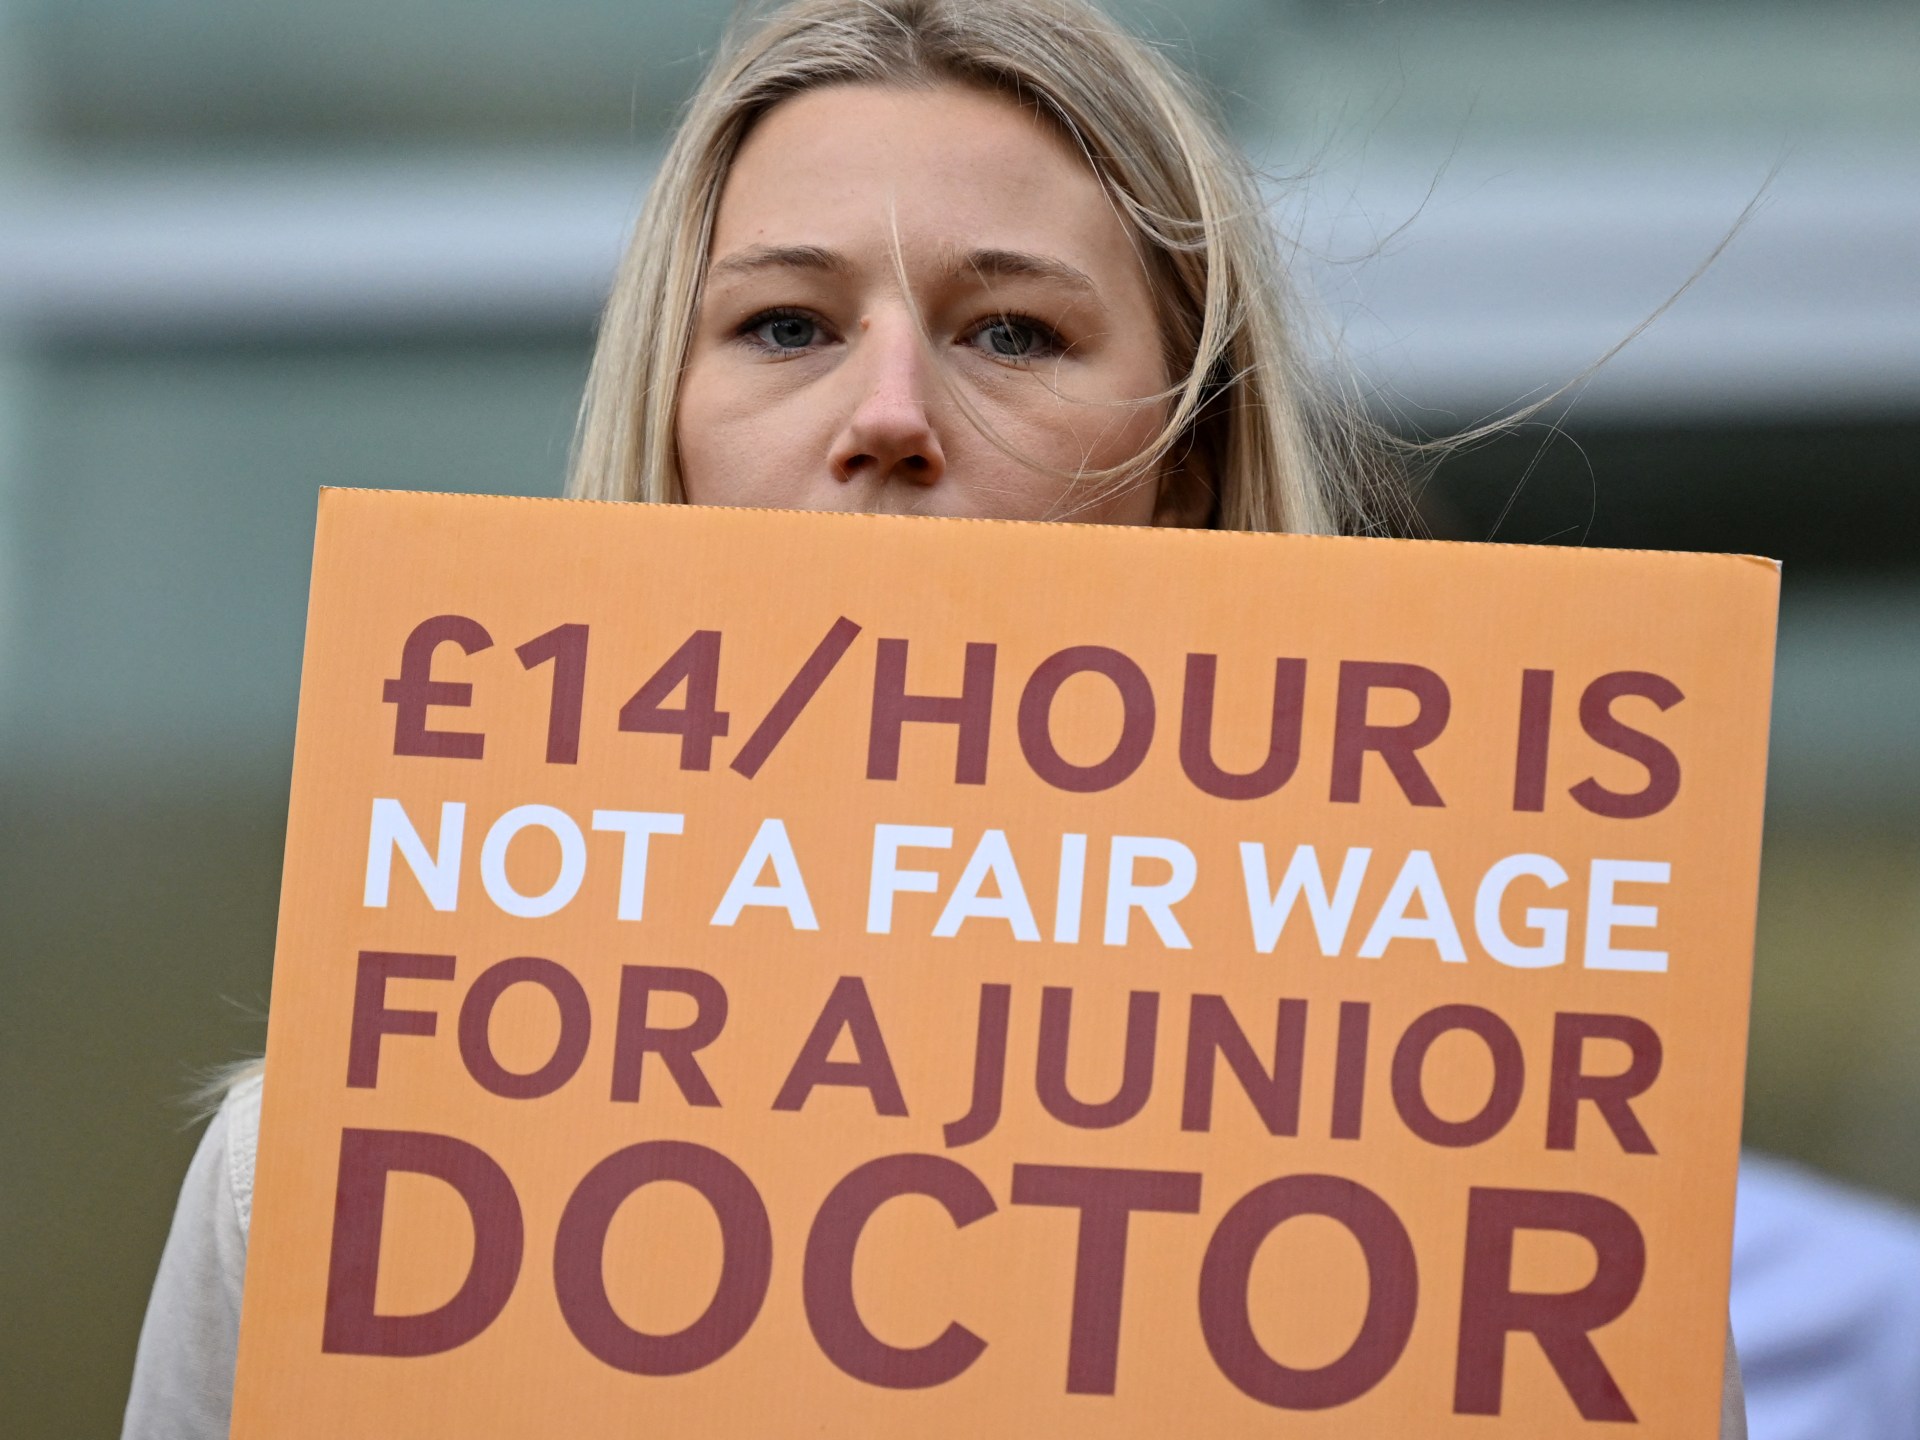 Grèves du NHS : quels sont les problèmes des services de santé britanniques ?  Manifestations des médecins ou coupes budgétaires ?  |  Actualités sur les droits du travail